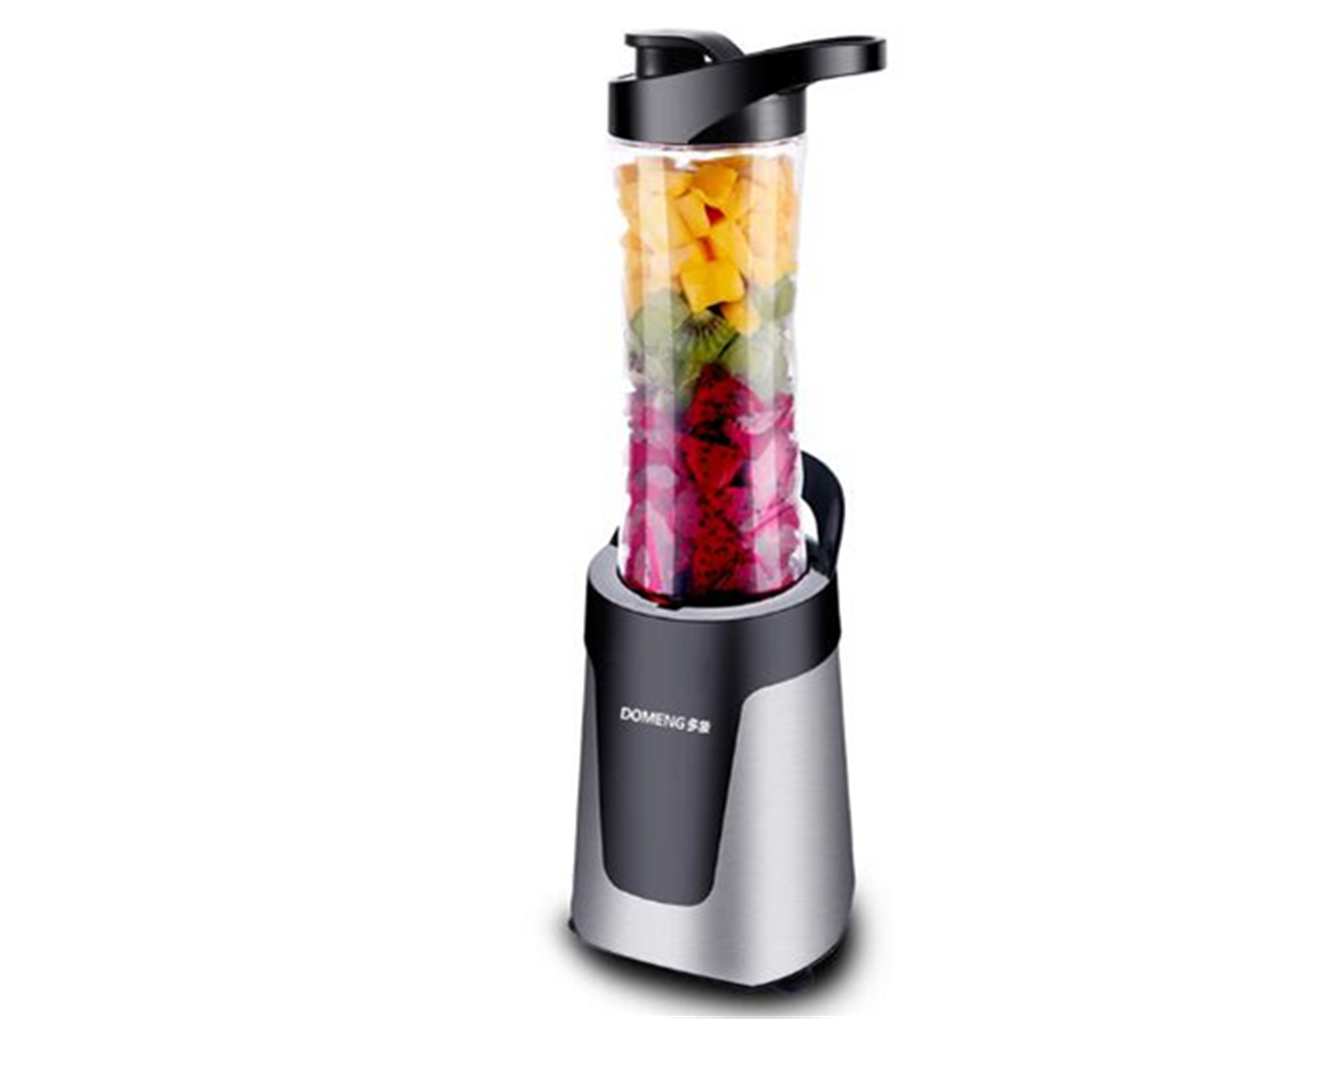 200W 220V Electric Juicer Blender Juice Vegetables Fruit Milkshake Mixer